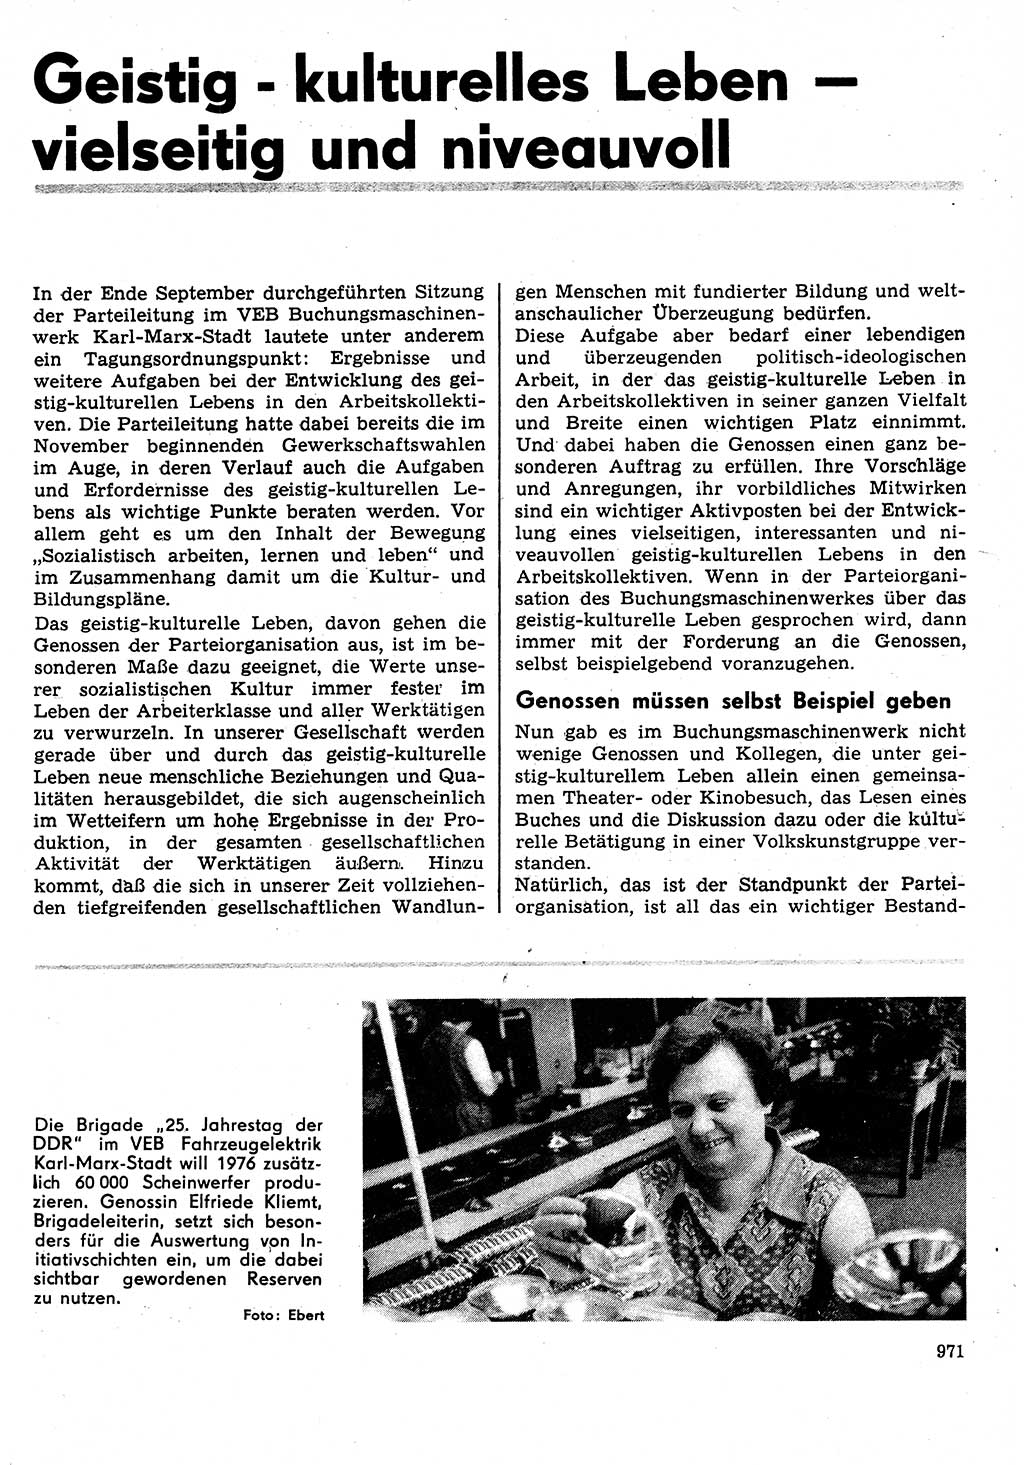 Neuer Weg (NW), Organ des Zentralkomitees (ZK) der SED (Sozialistische Einheitspartei Deutschlands) für Fragen des Parteilebens, 31. Jahrgang [Deutsche Demokratische Republik (DDR)] 1976, Seite 971 (NW ZK SED DDR 1976, S. 971)